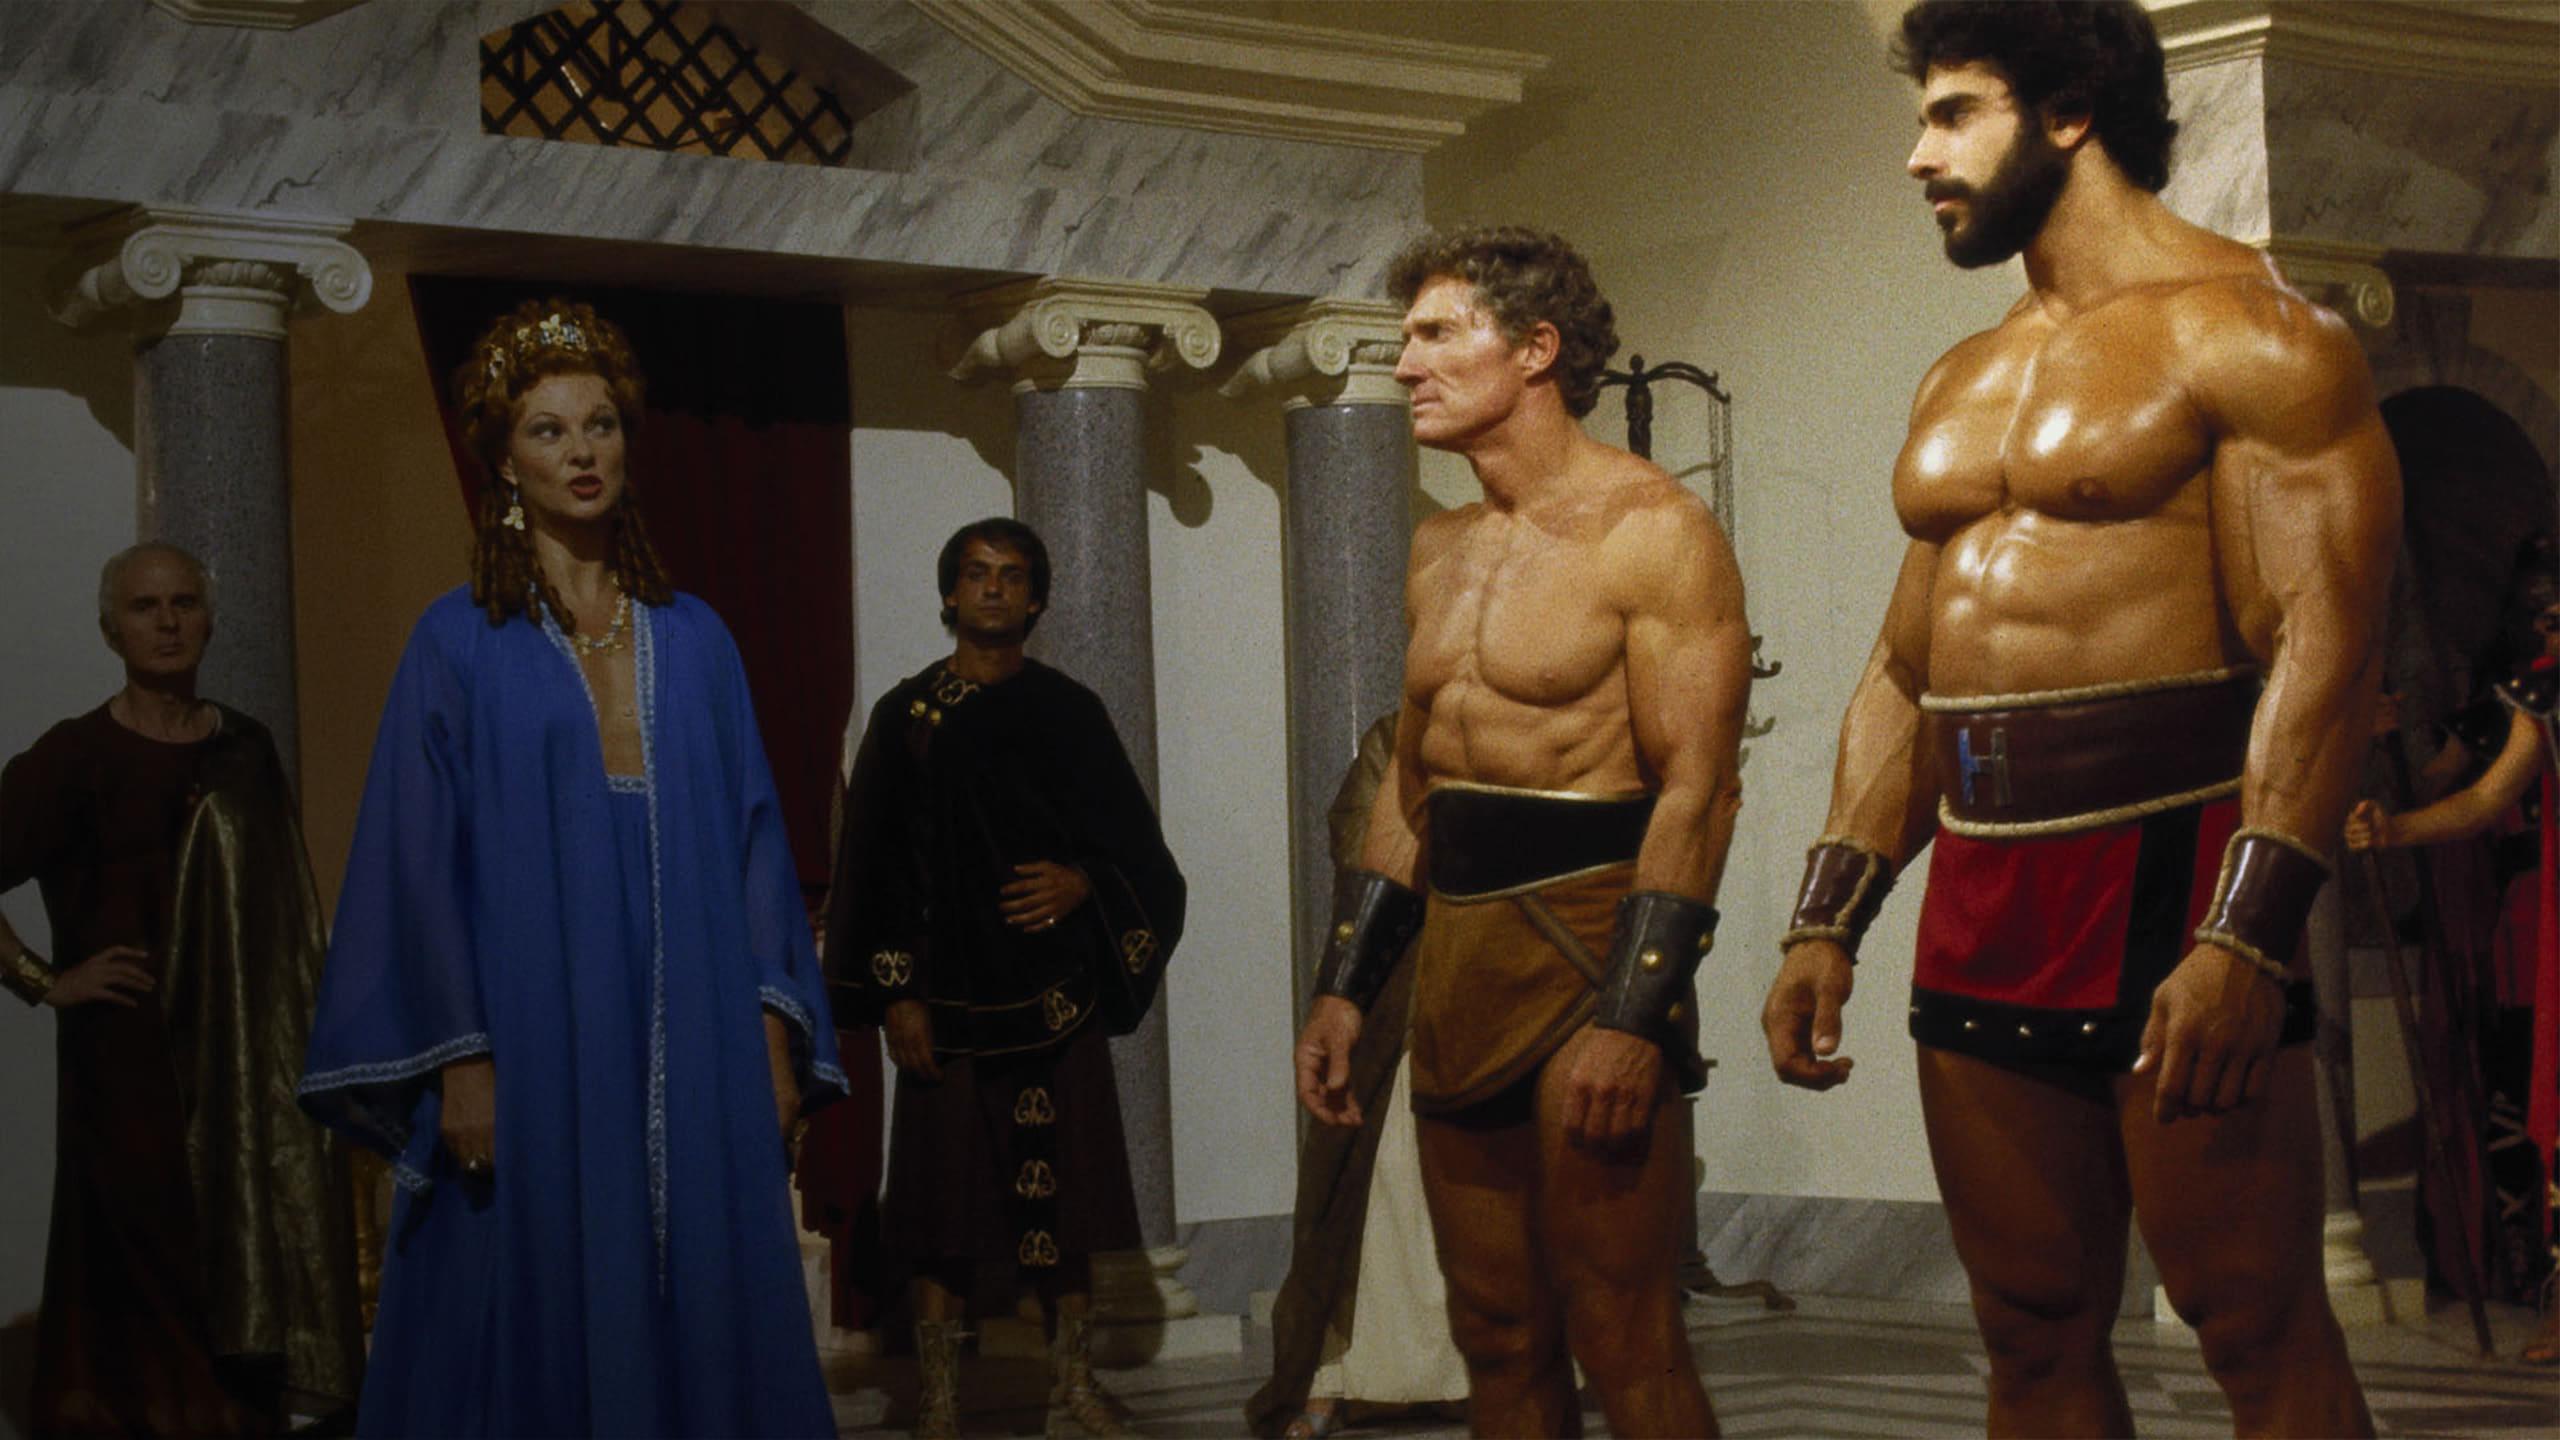 The Seven Magnificent Gladiators backdrop